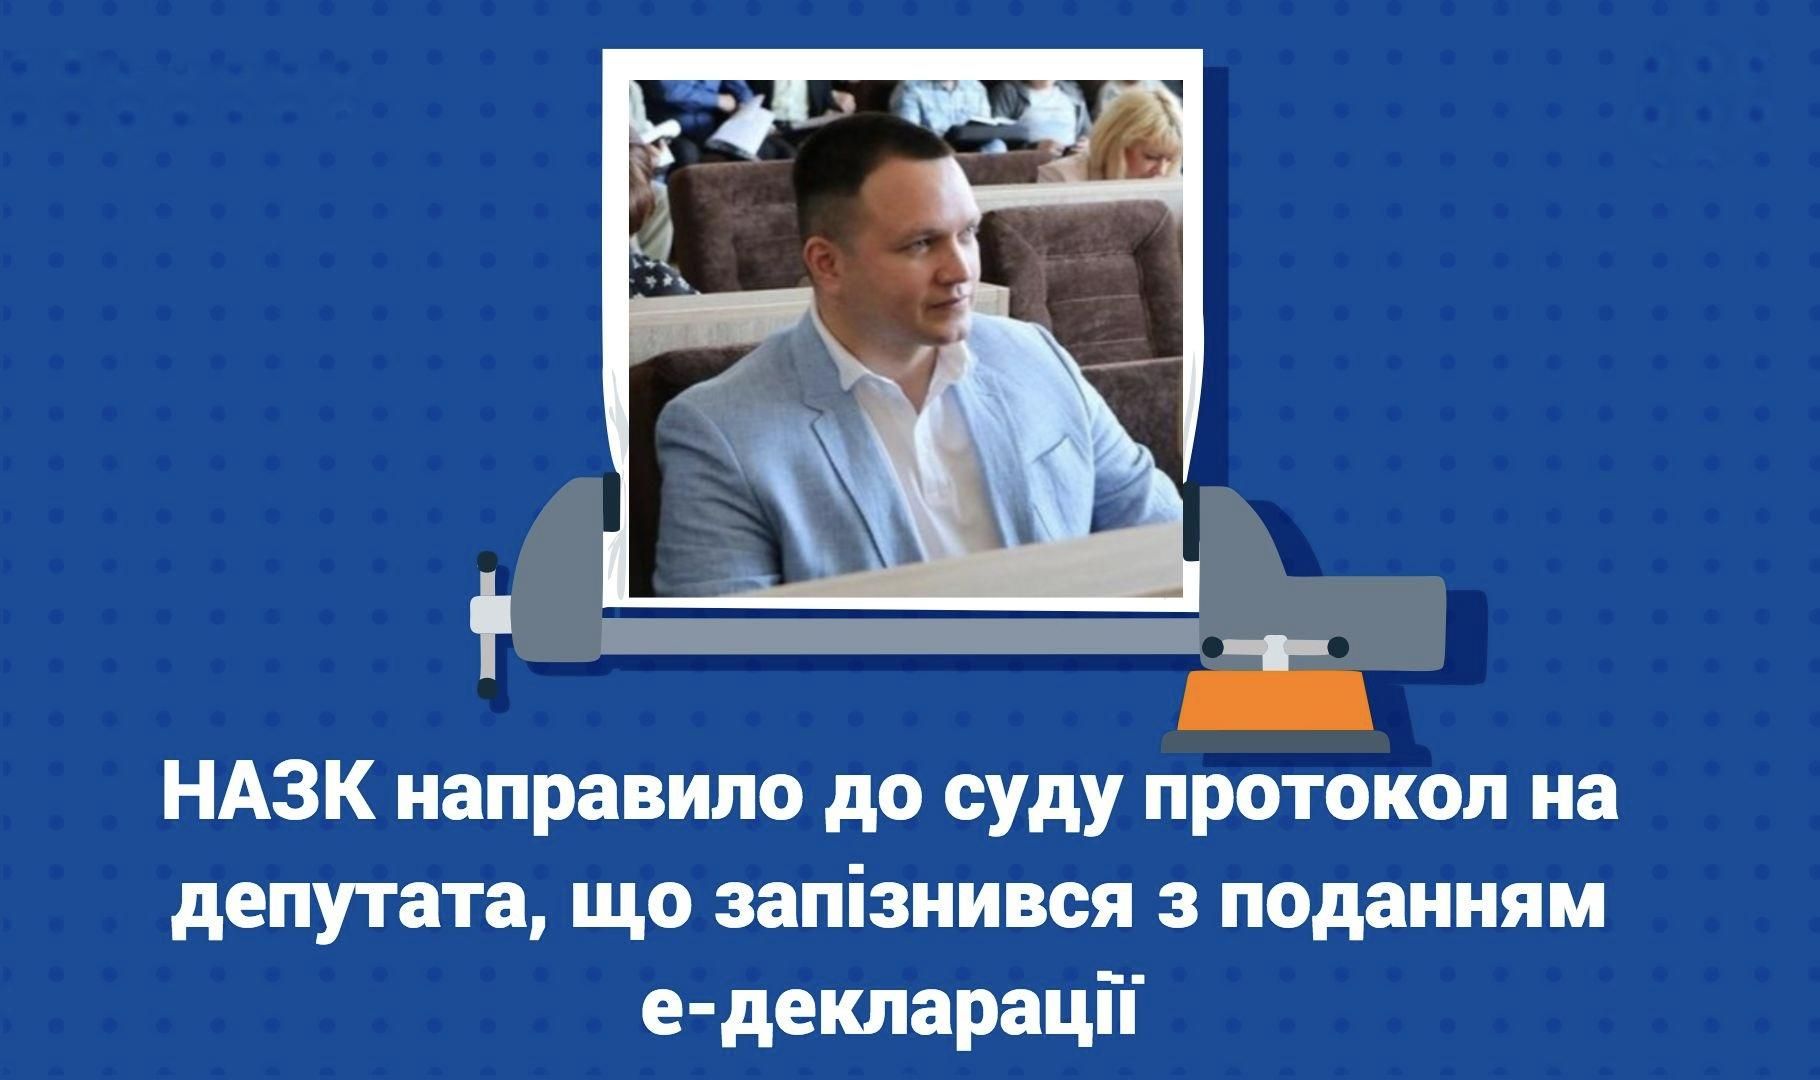 Депутат Черкас Тищенко вчасно не подав декларацію: НАЗК направило протокол про порушення до суду